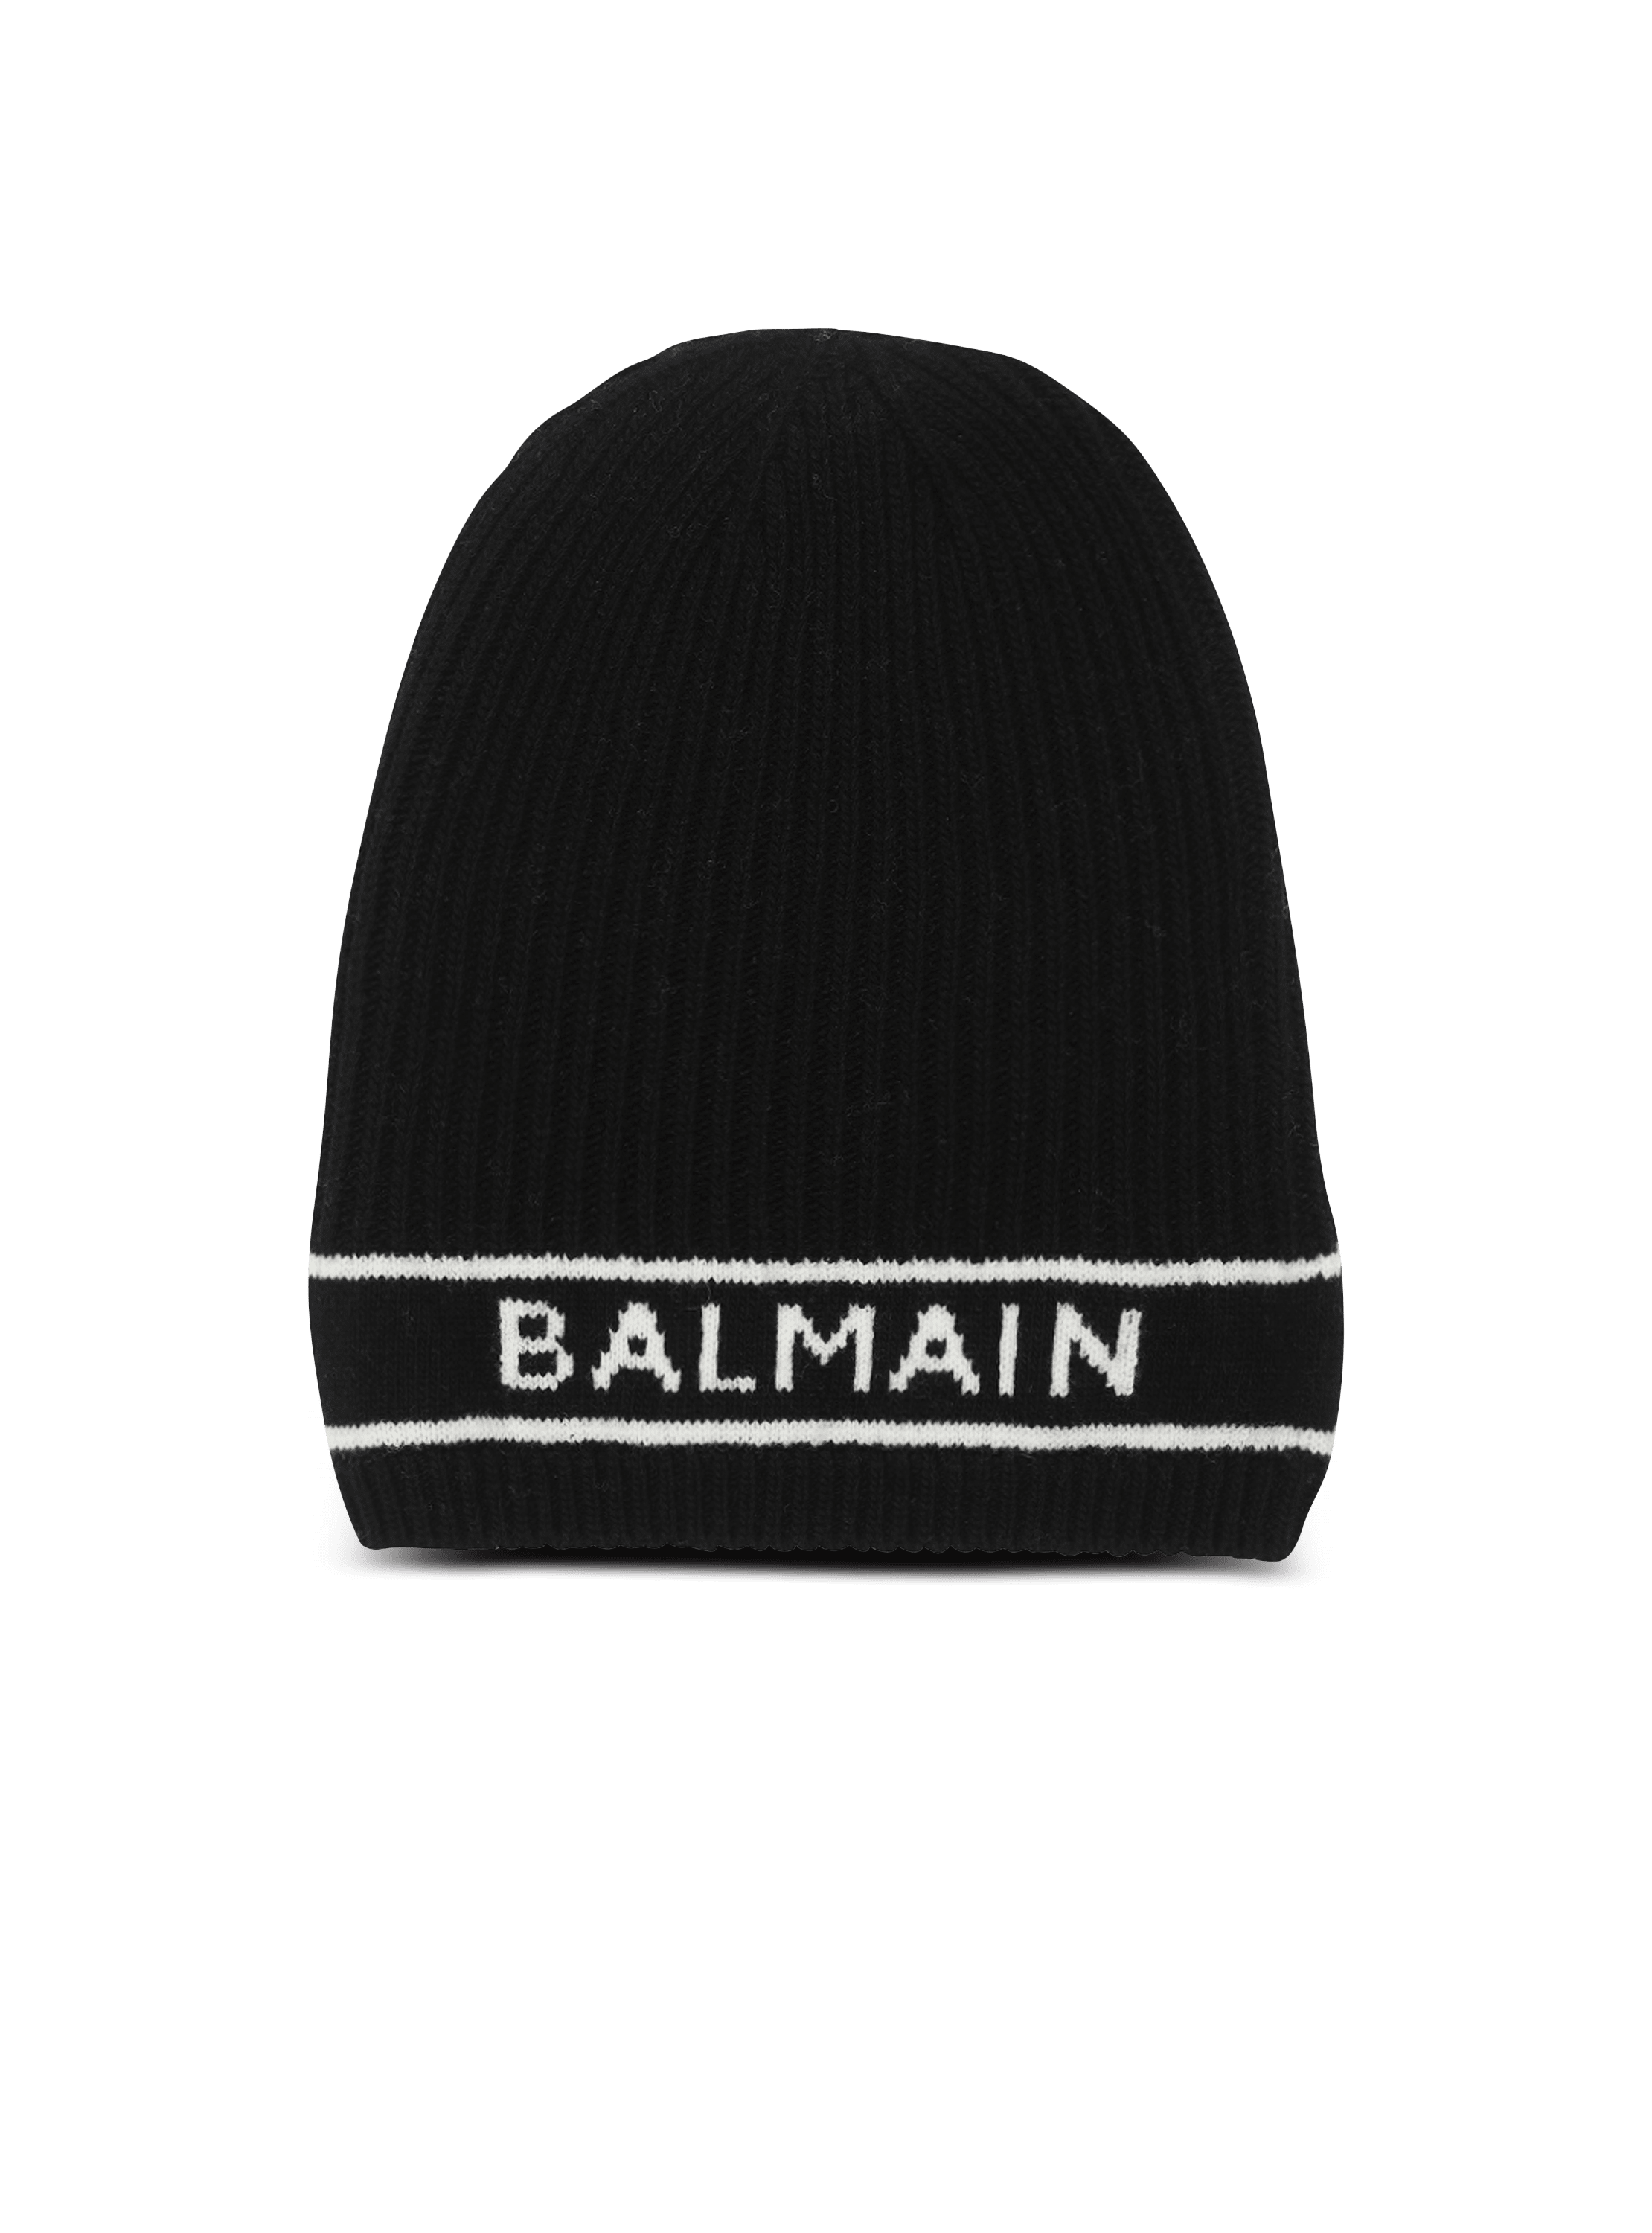 Bestickte Wollmütze mit Balmain-Logo